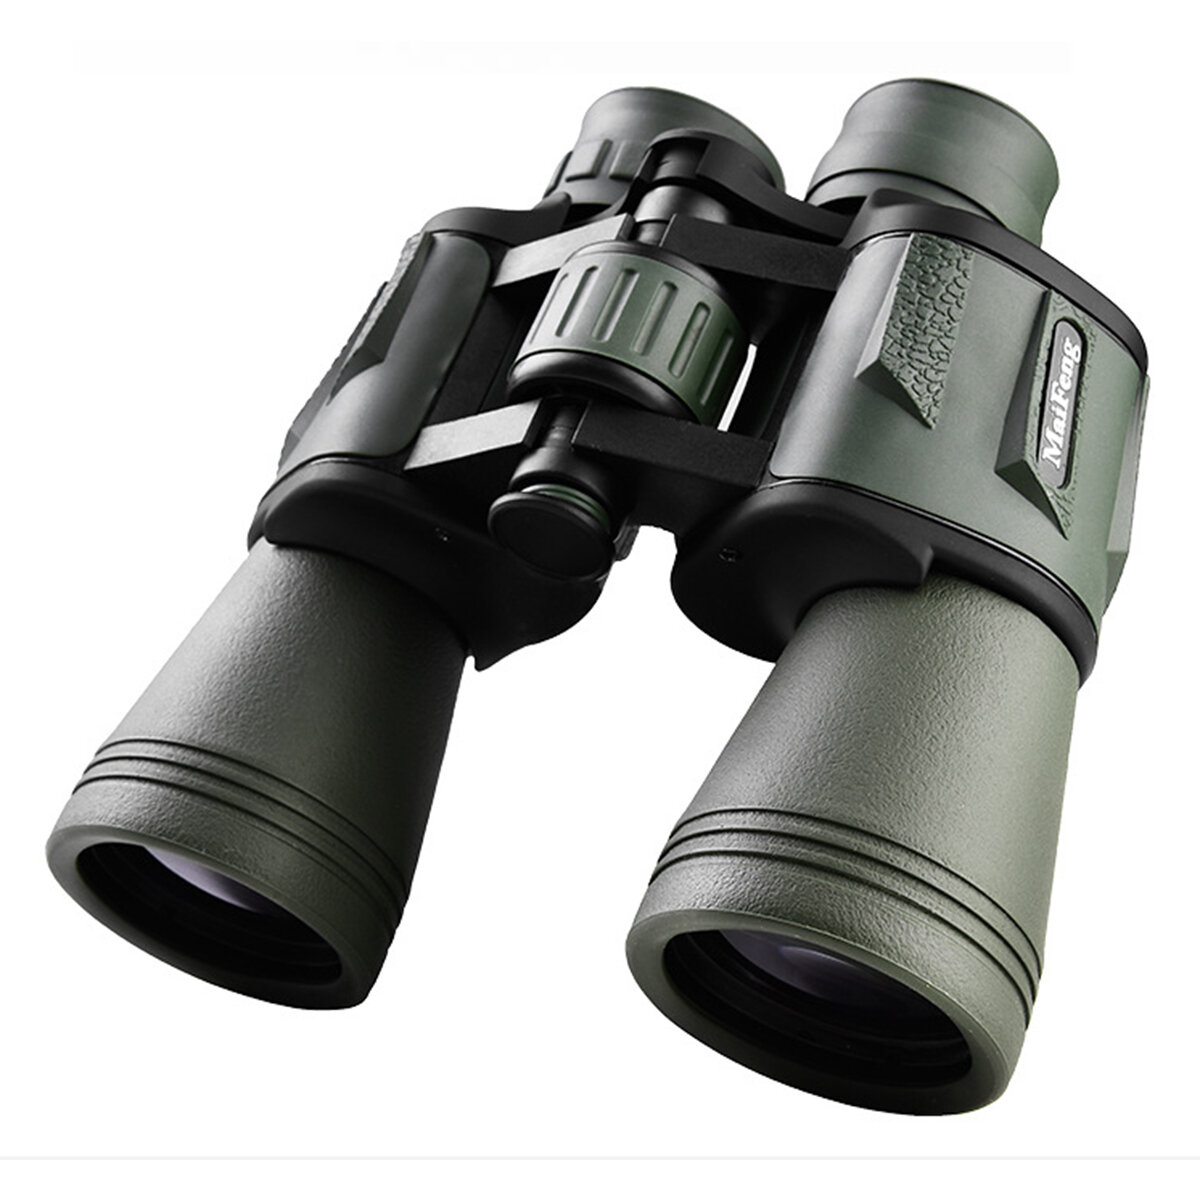 Telescópio profissional de alta potência 20X50 de longo alcance com binóculos de alta definição para visão noturna ao ar livre, caça, camping e viagens.